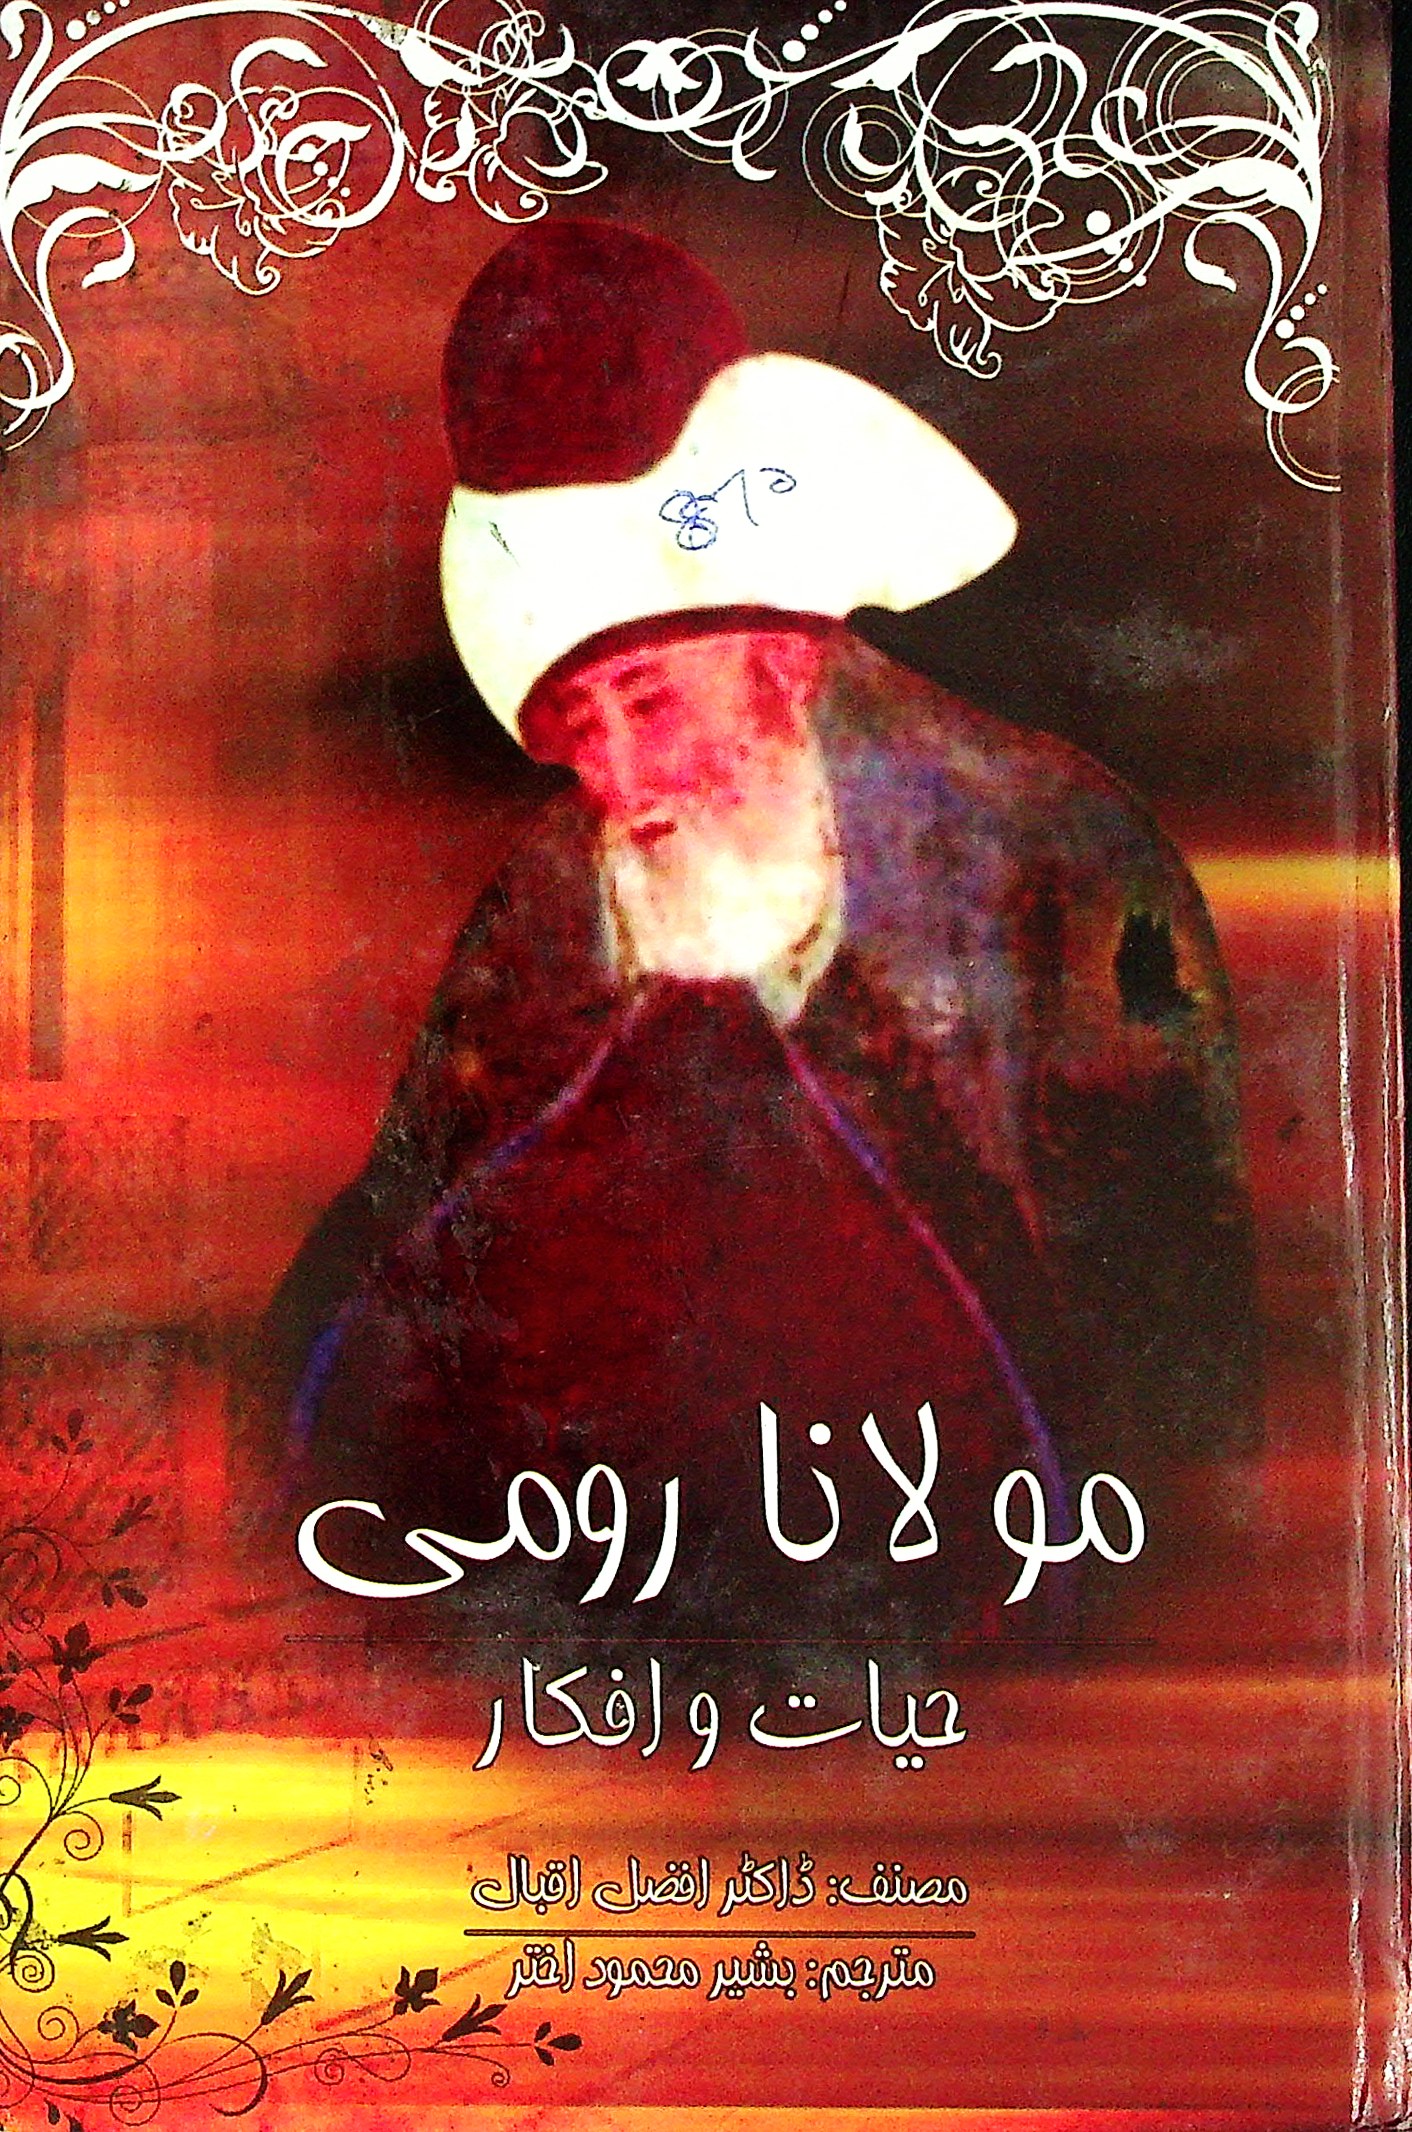 Maulana Rumi :